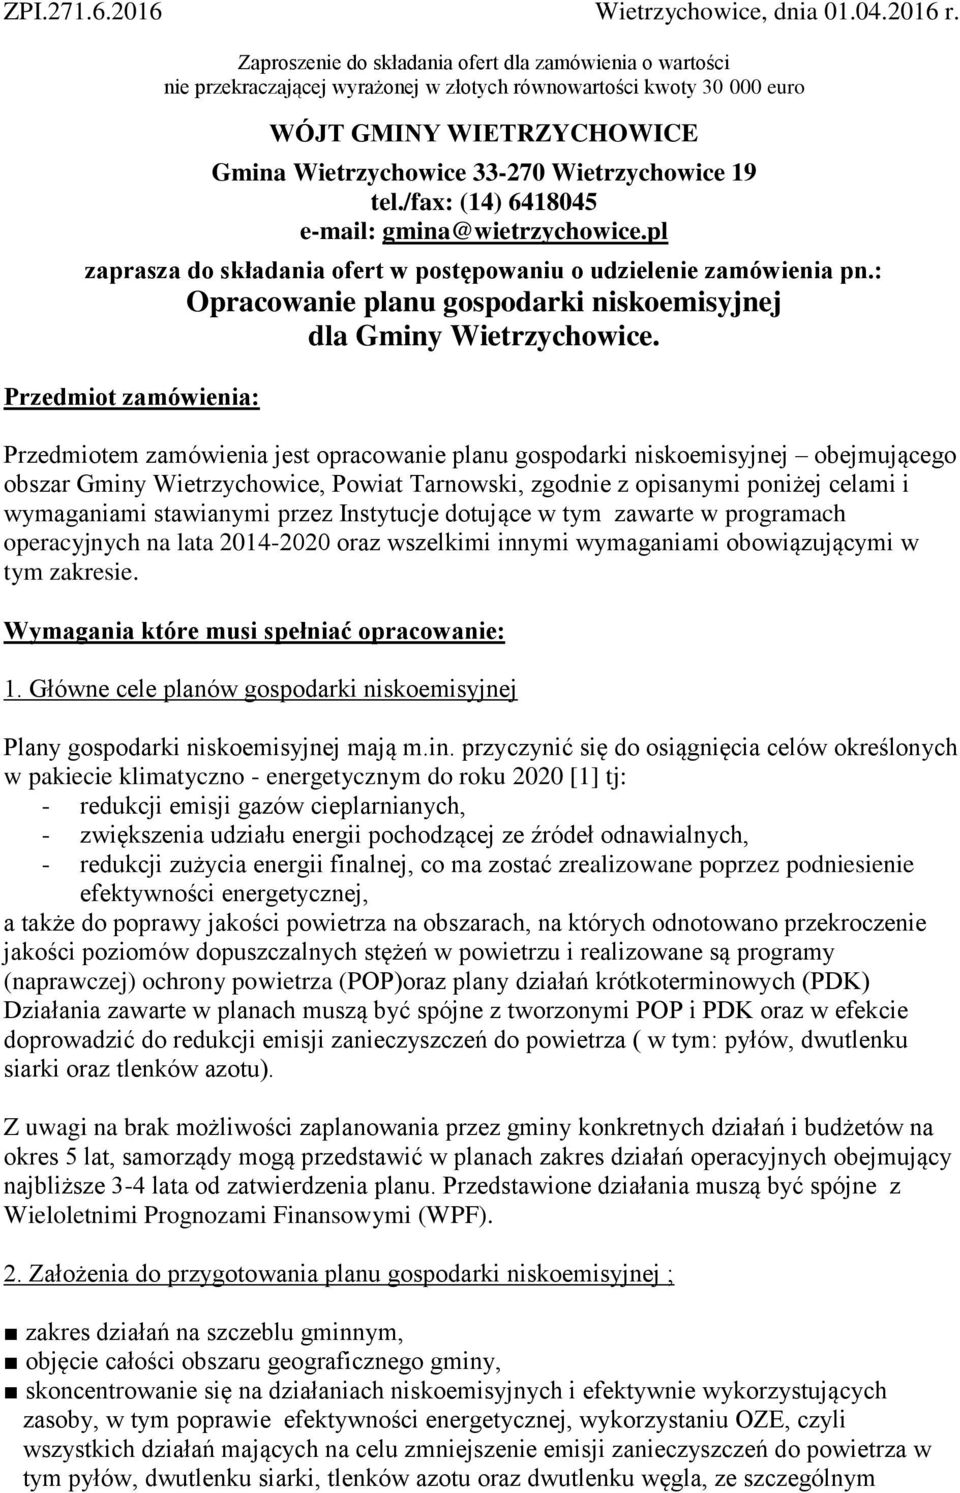 19 tel./fax: (14) 6418045 e-mail: gmina@wietrzychowice.pl zaprasza do składania ofert w postępowaniu o udzielenie zamówienia pn.: Opracowanie planu gospodarki niskoemisyjnej dla Gminy Wietrzychowice.